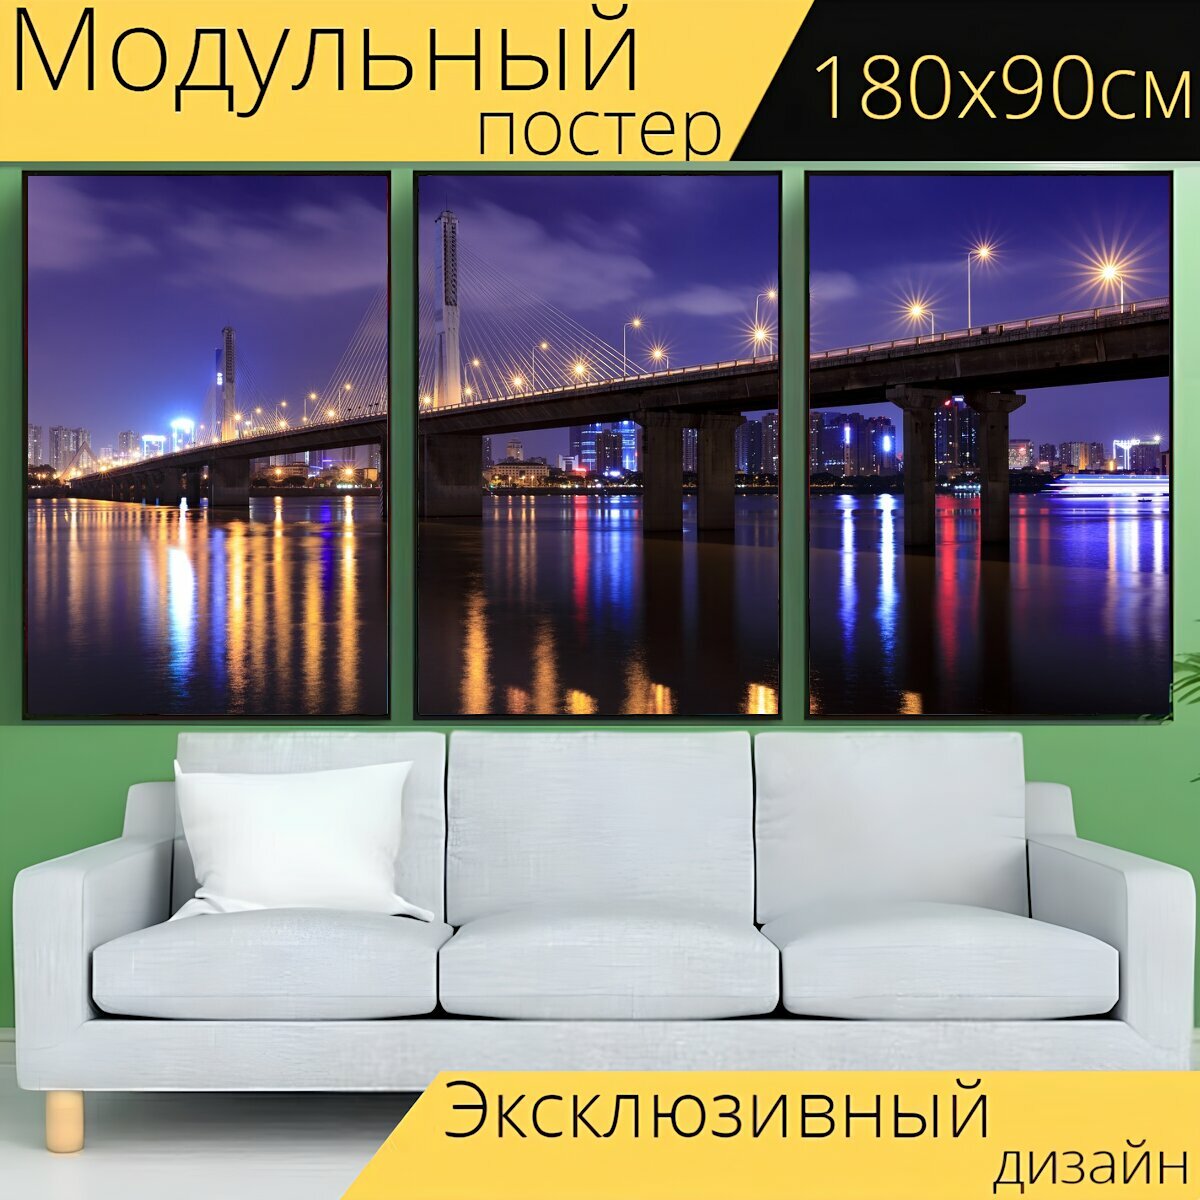 Модульный постер "Чанша, ночная точка зрения, мост" 180 x 90 см. для интерьера